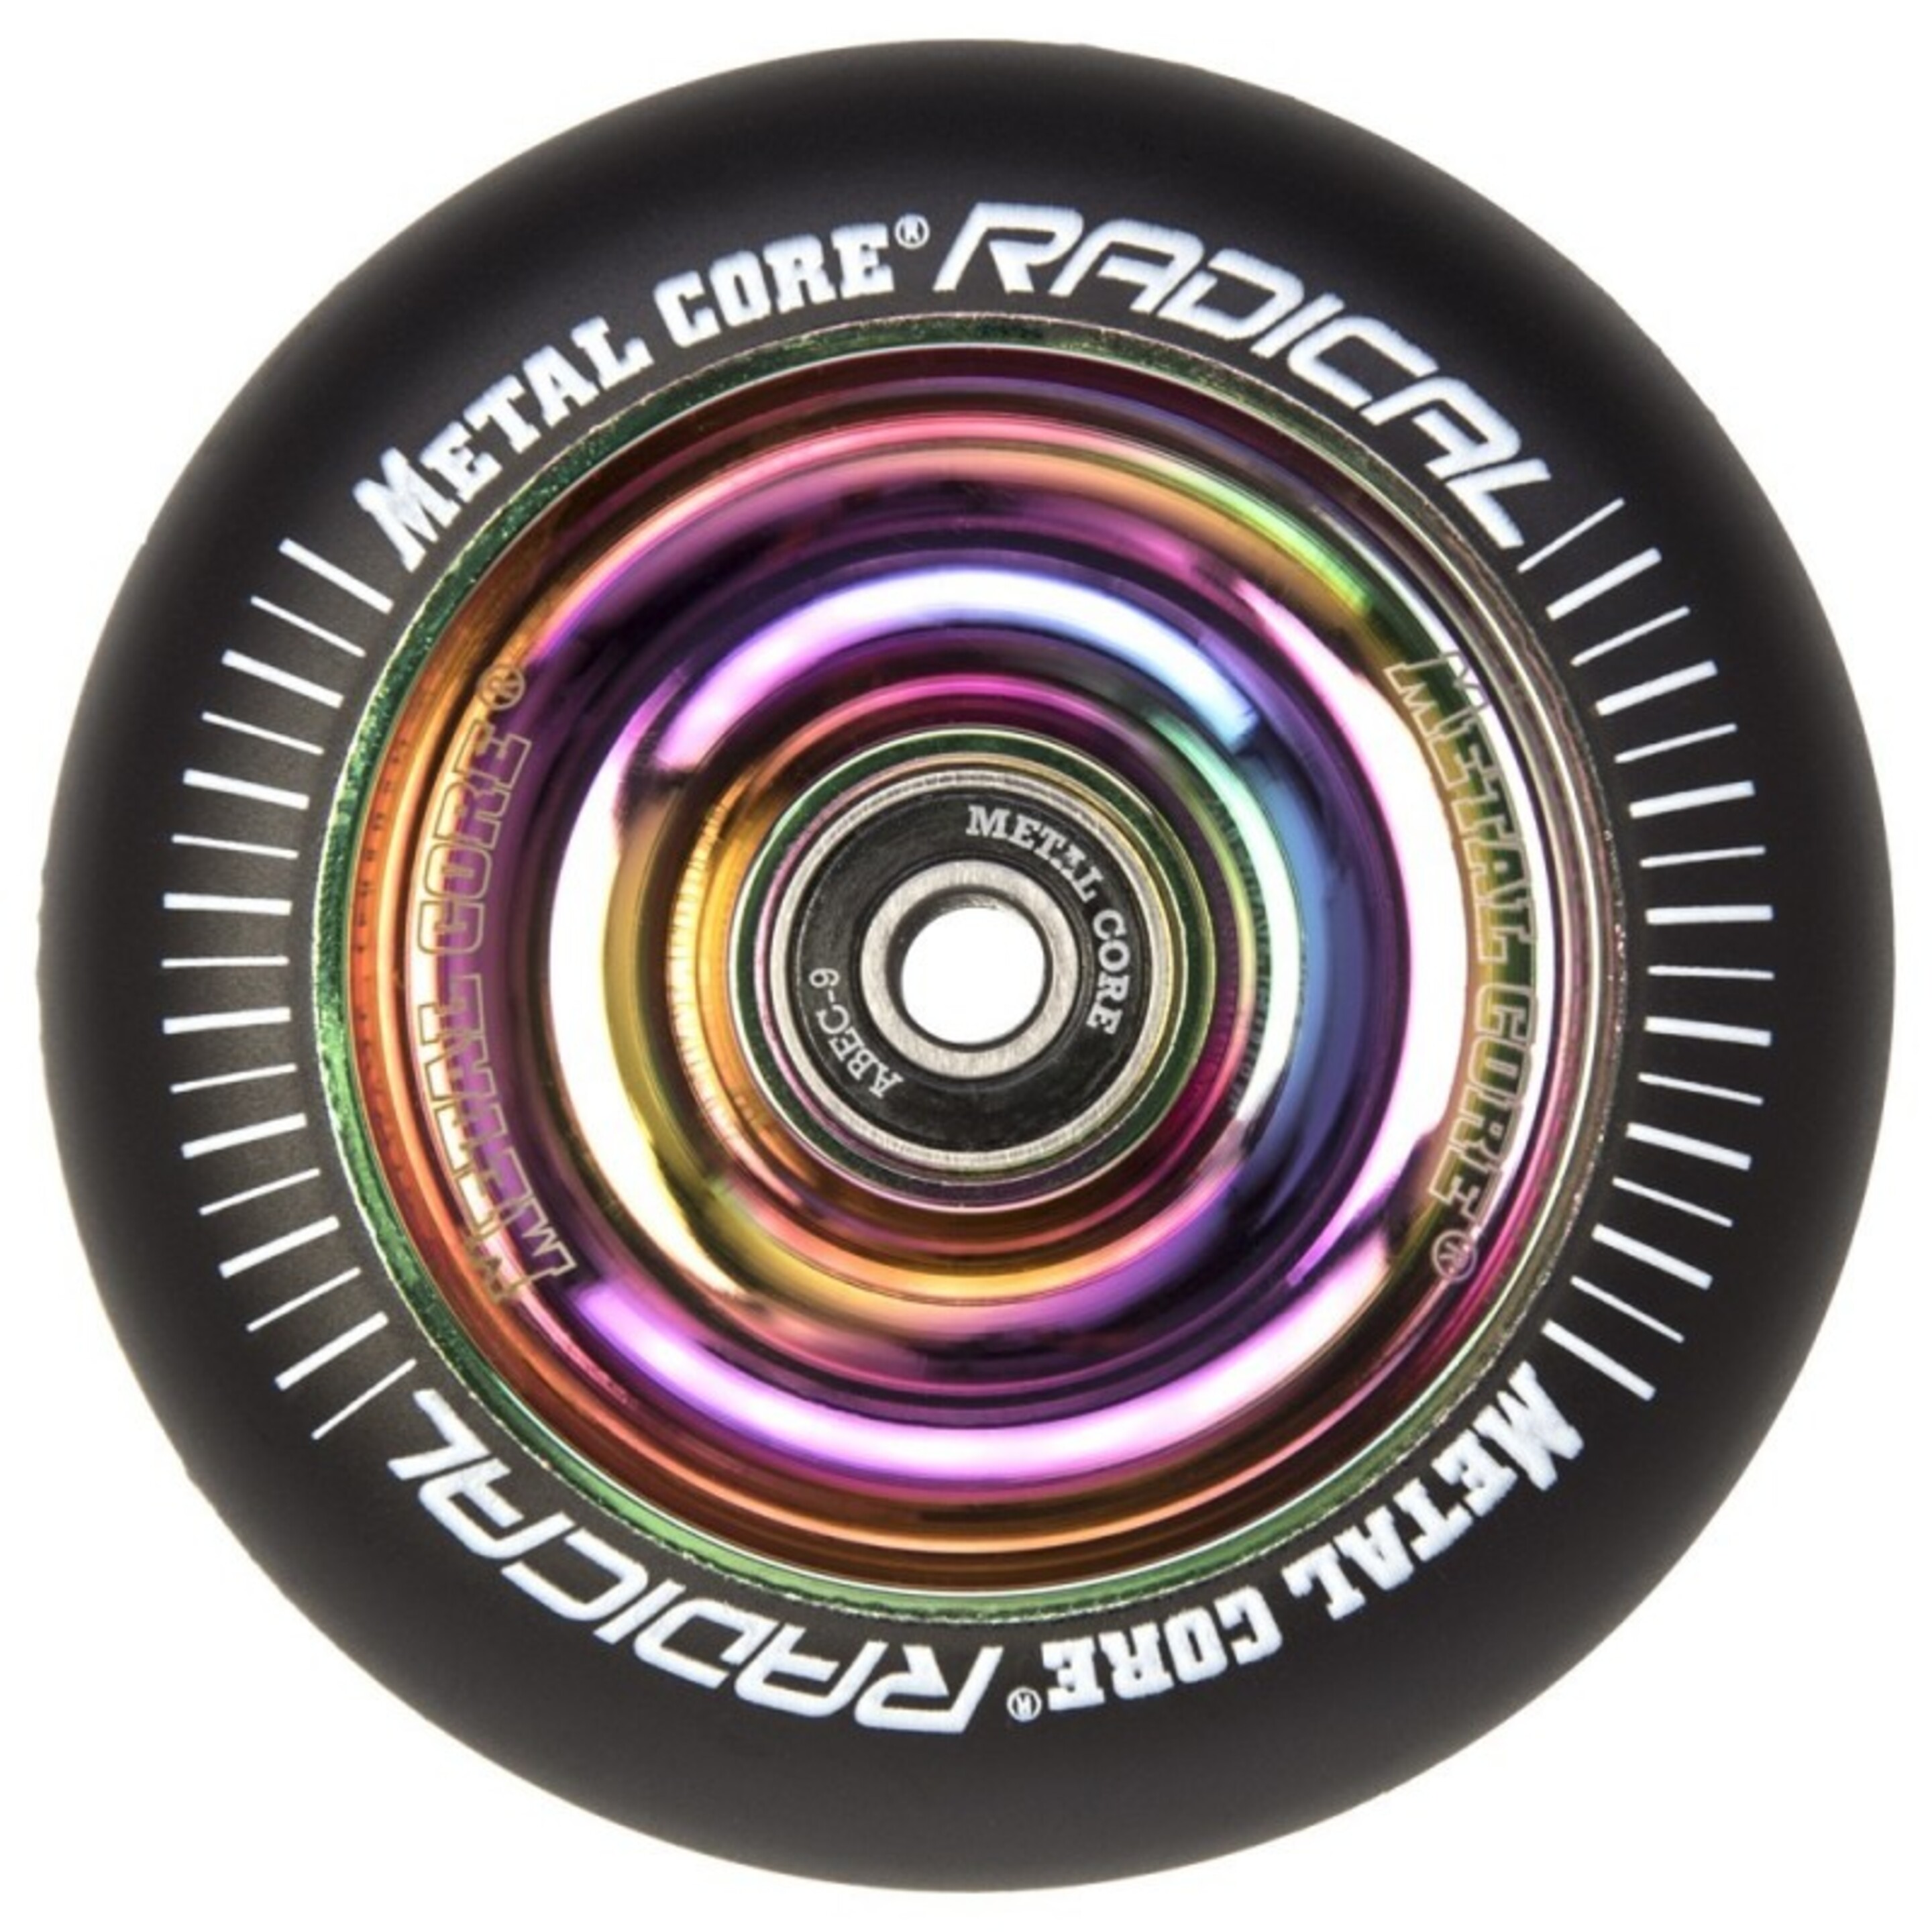 Ruedas Metal Core Radical Ref. Radical 110 Mm - multicolor - 